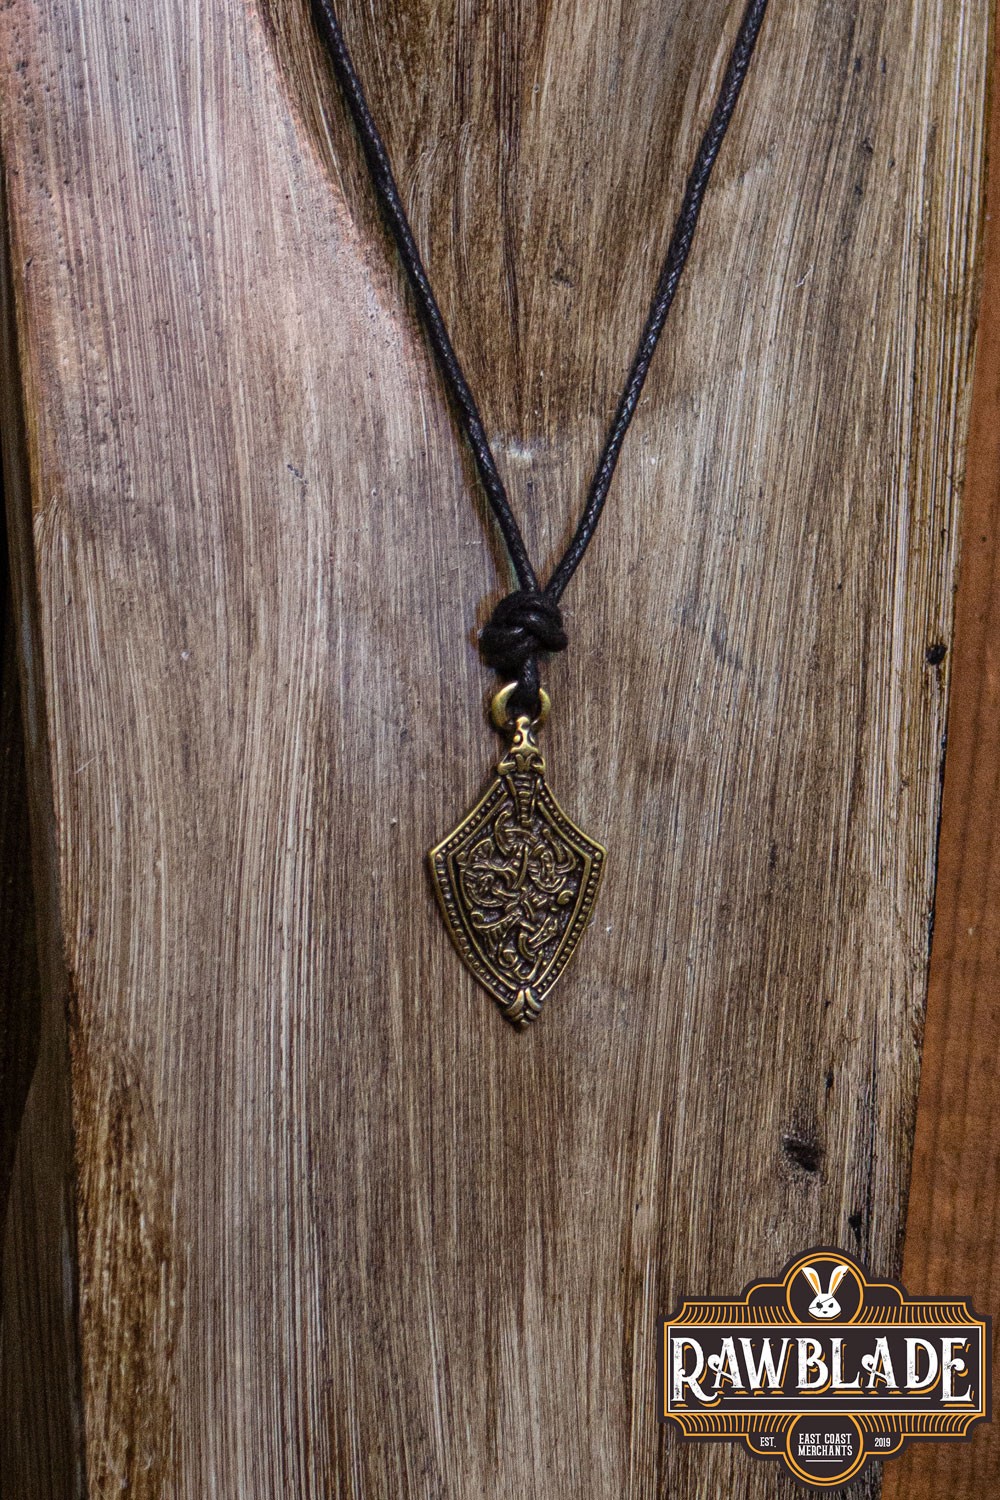 Viking Key Pendant, Viking Key Necklace, Viking Replica